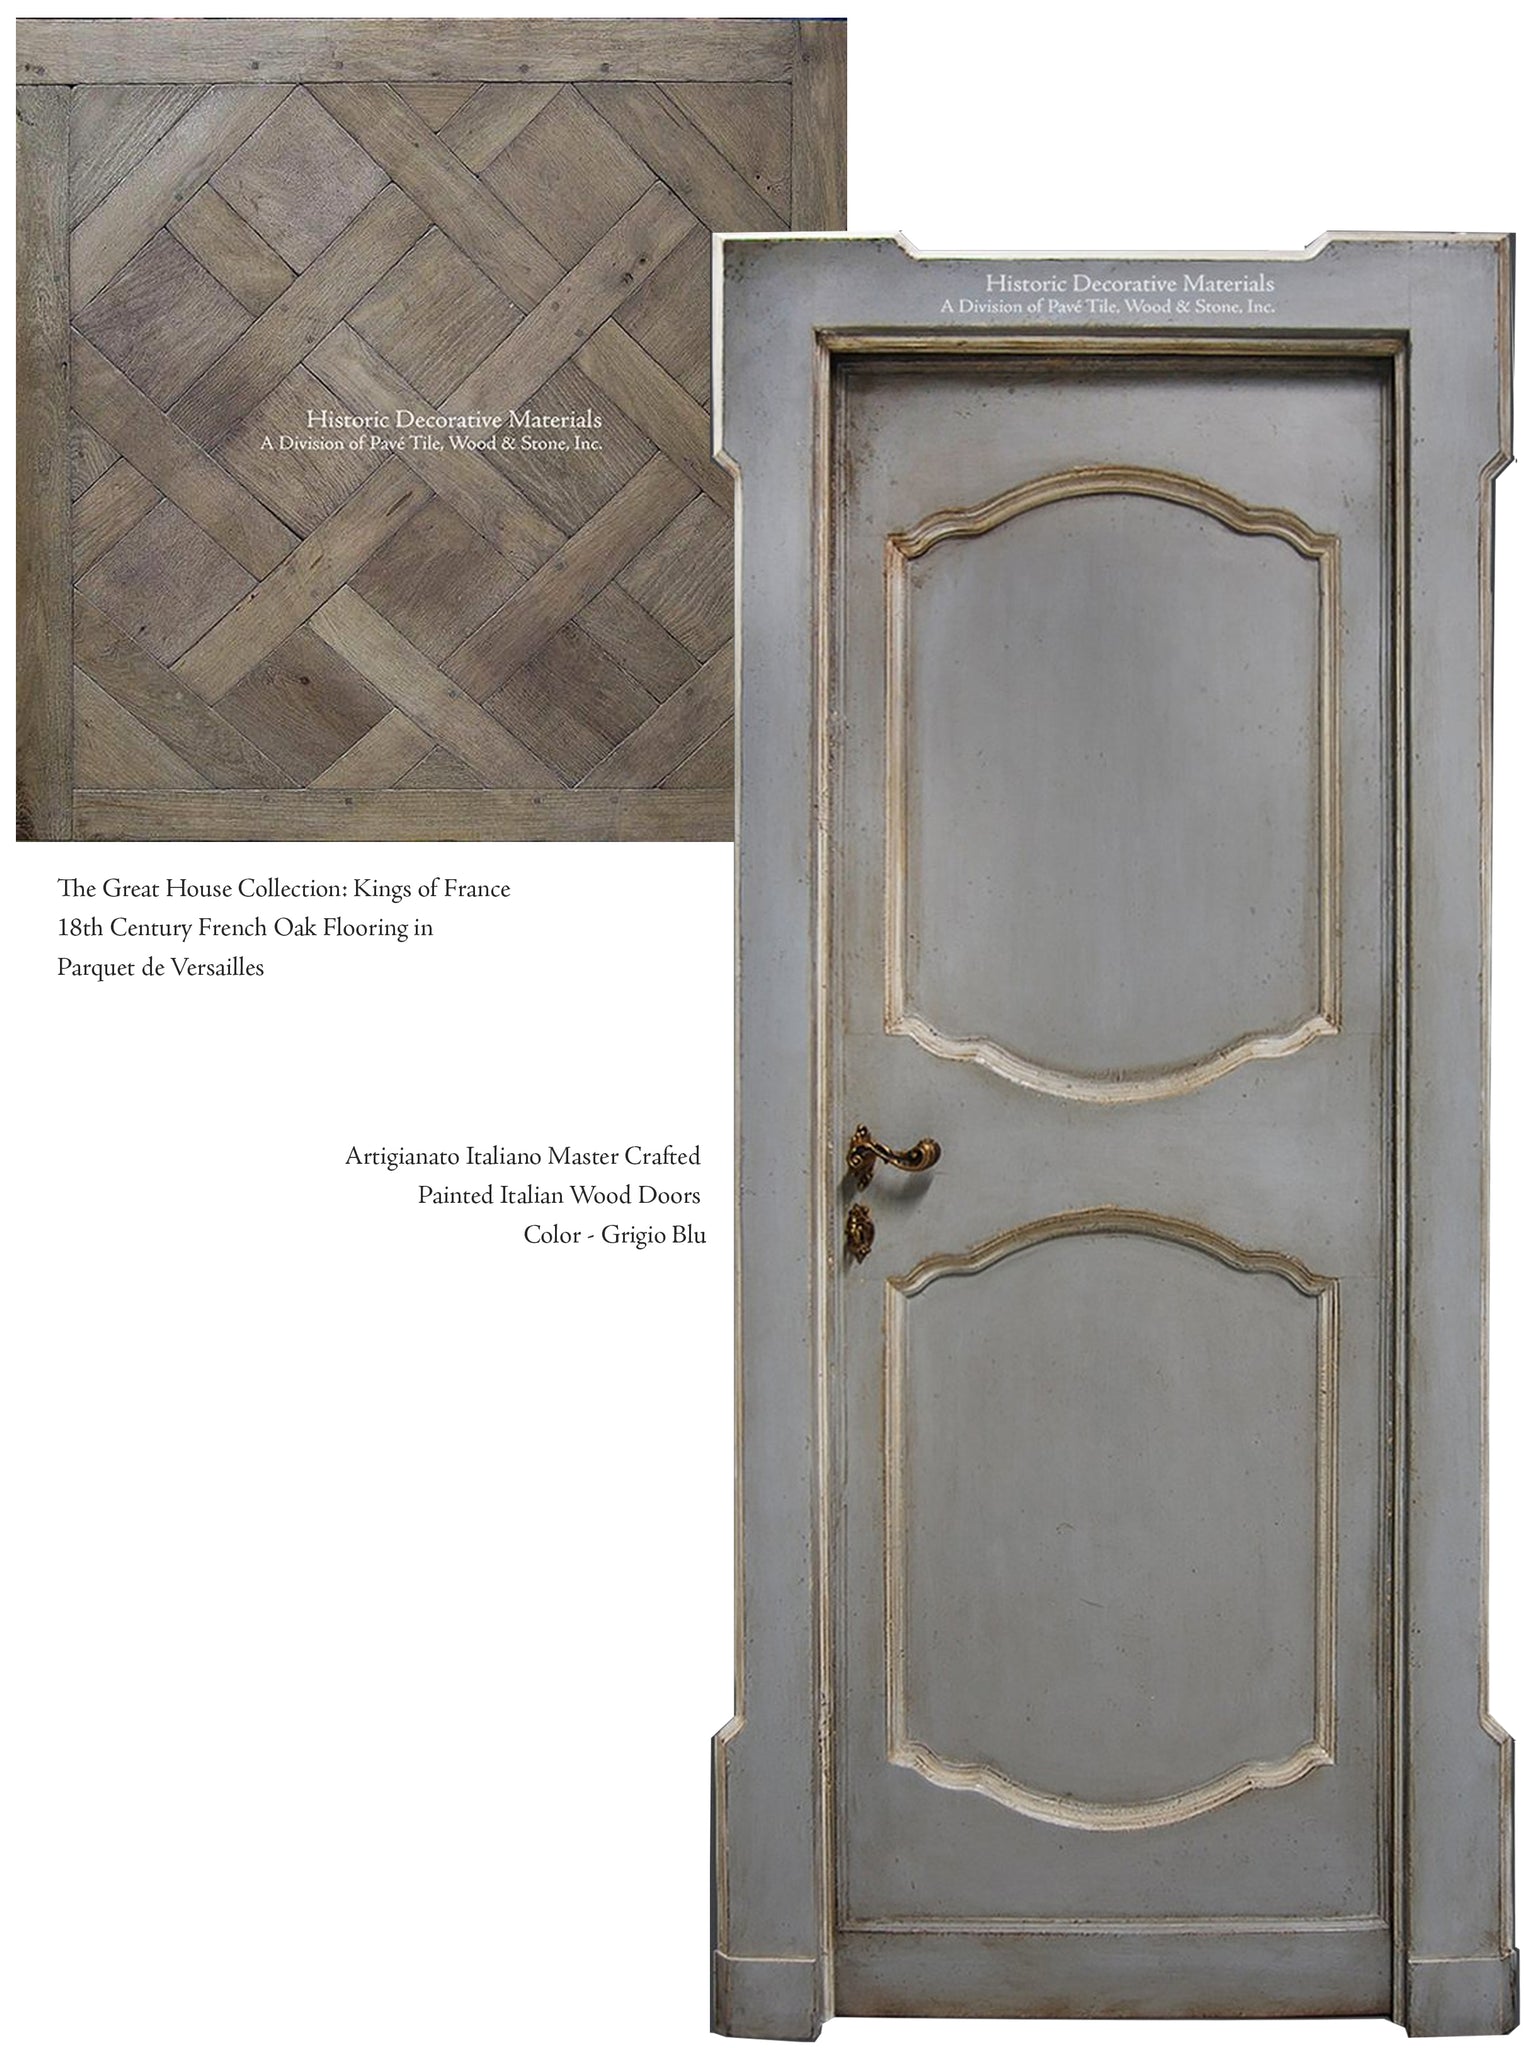 French Oak Floors Parquet de Versailles and Hand Painted Italian Wood Doors